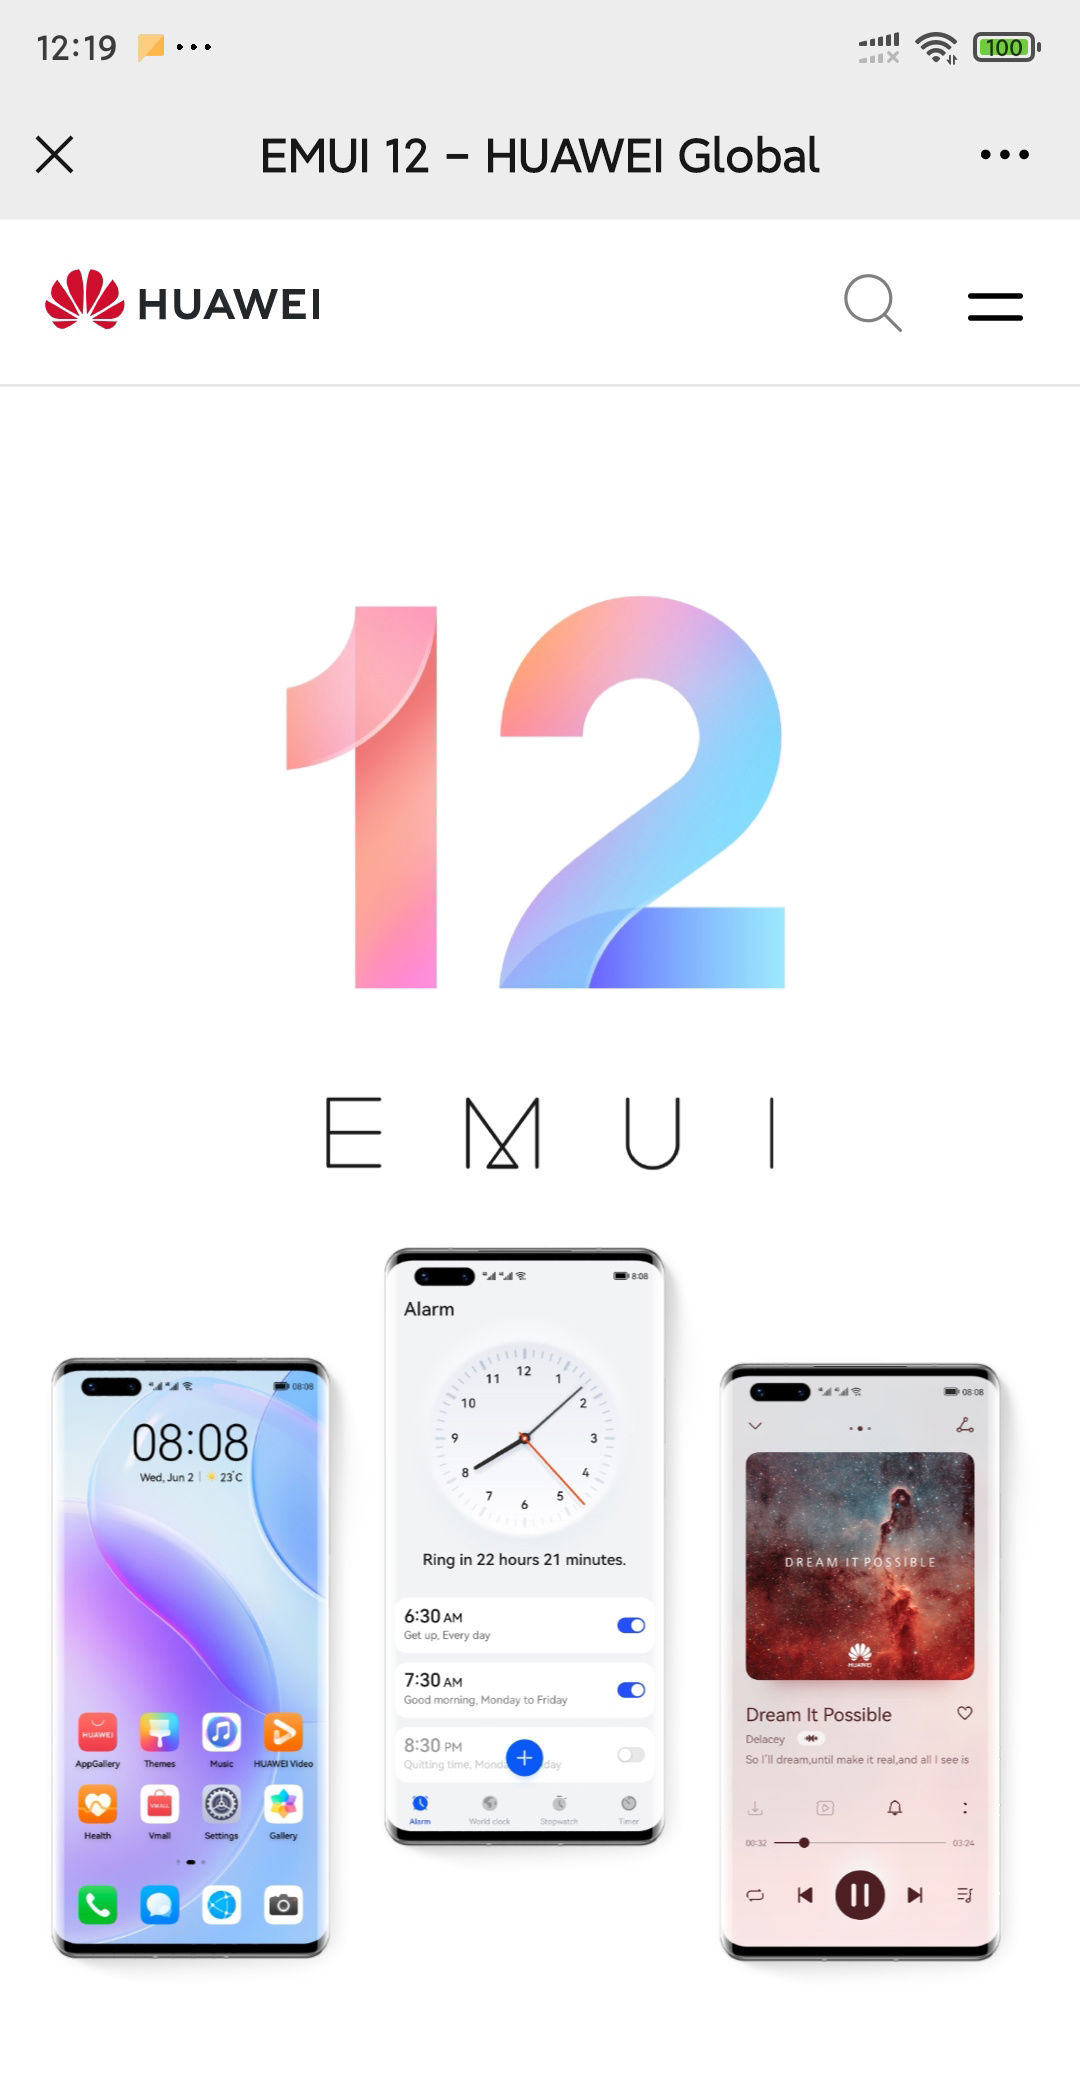 hu华为官网上线 EMUI 12 手机系统